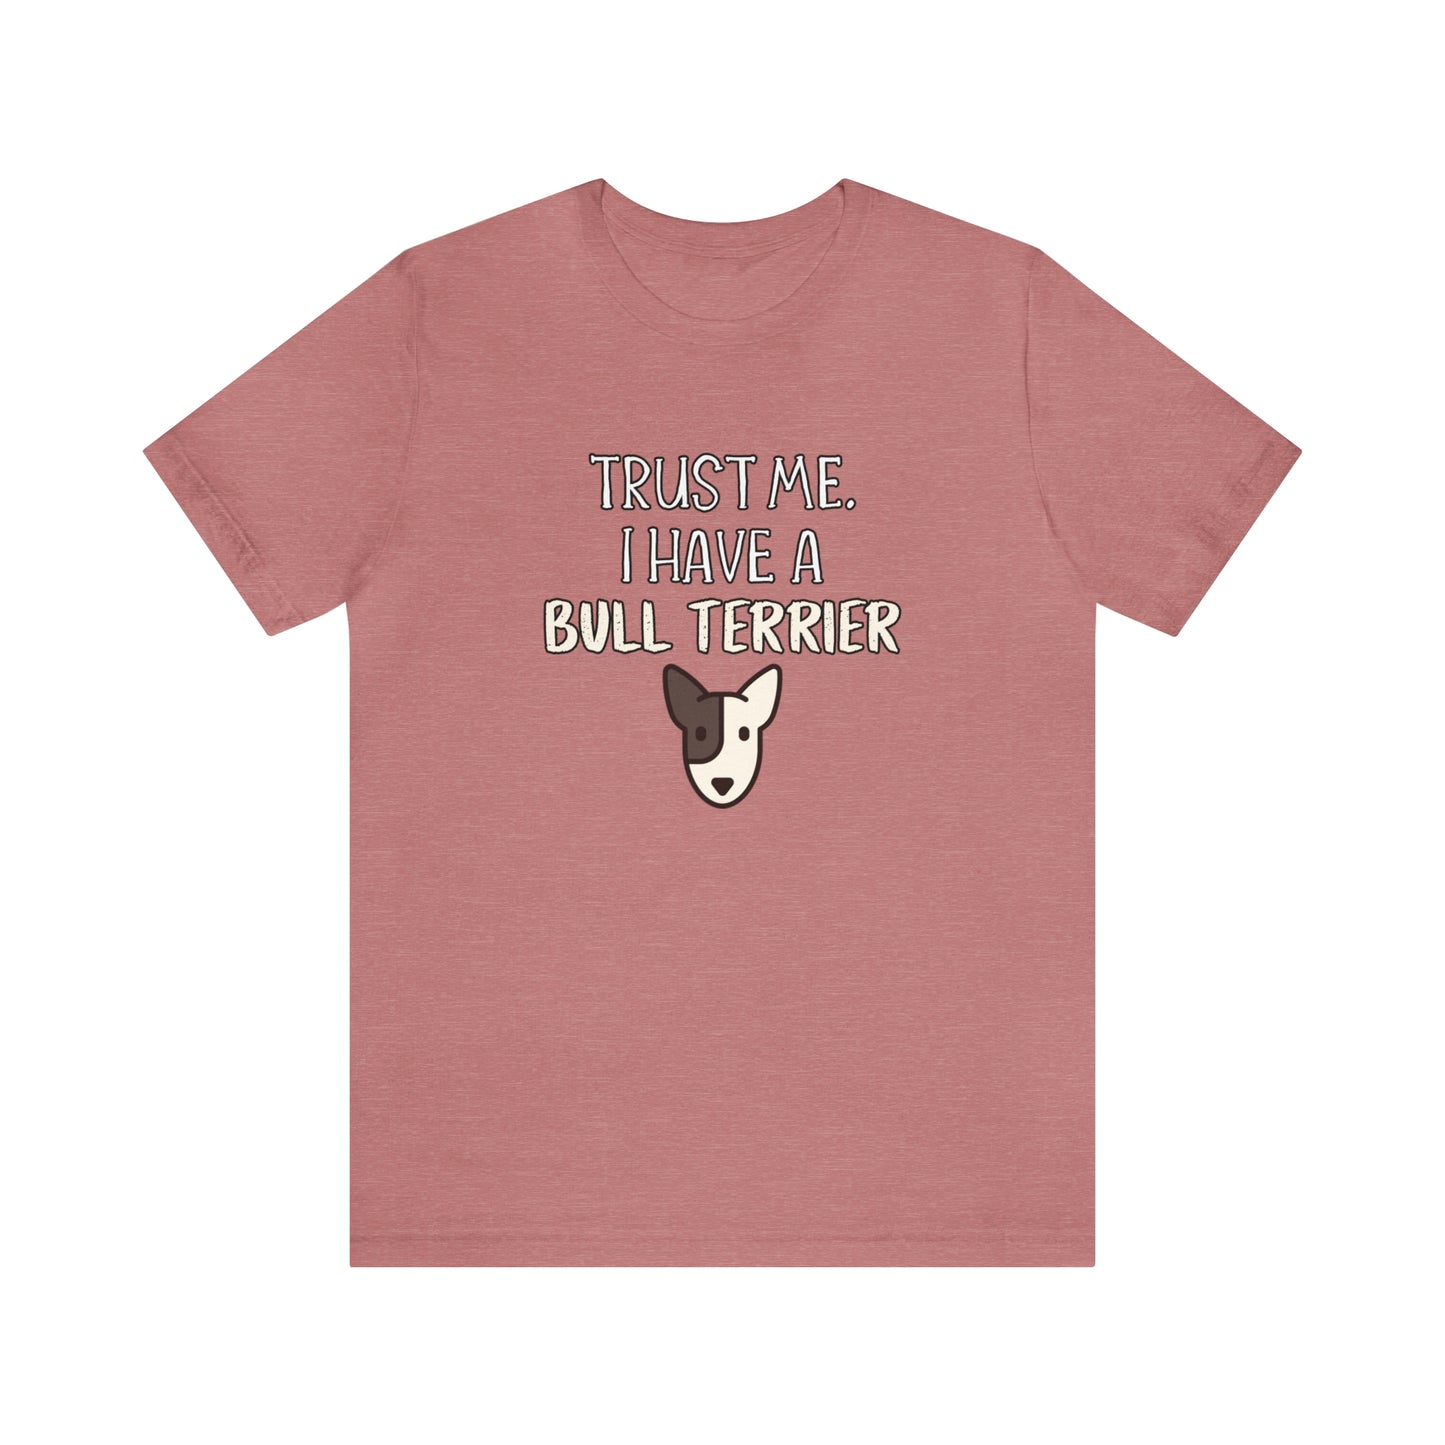 bull terrier t shirt pink